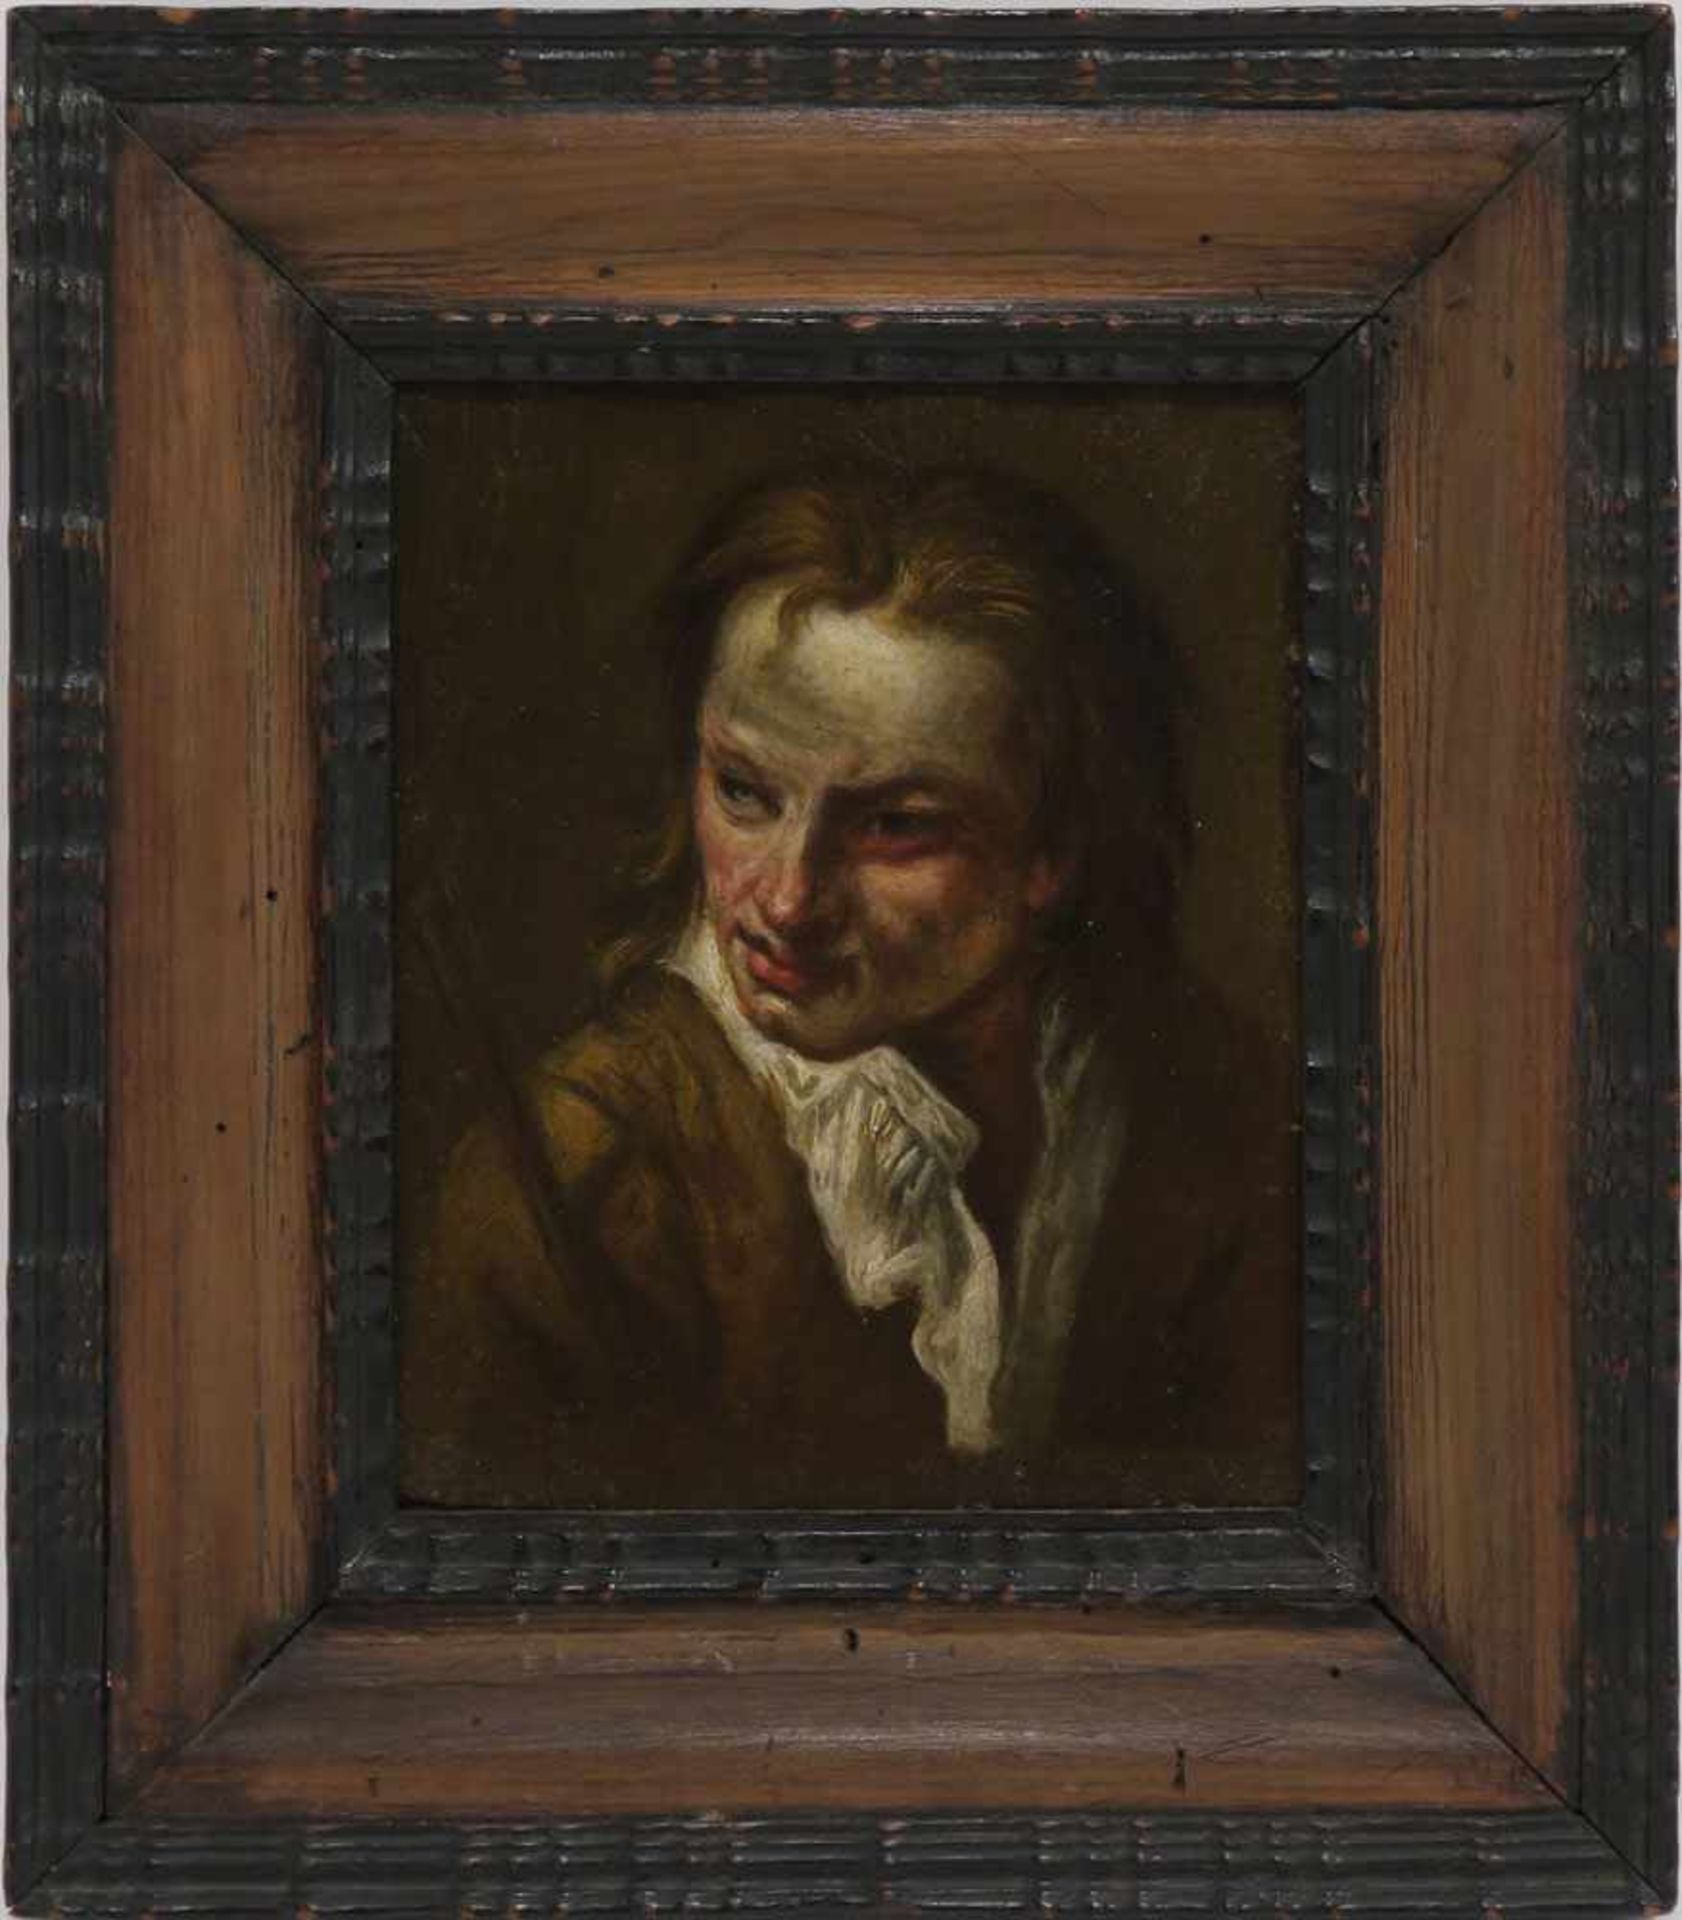 Unbekannt18. Jh.MännerportraitÖl/Lwd./Holz. 17 x 13,5 cm. Rest., beschnitten, min. besch.